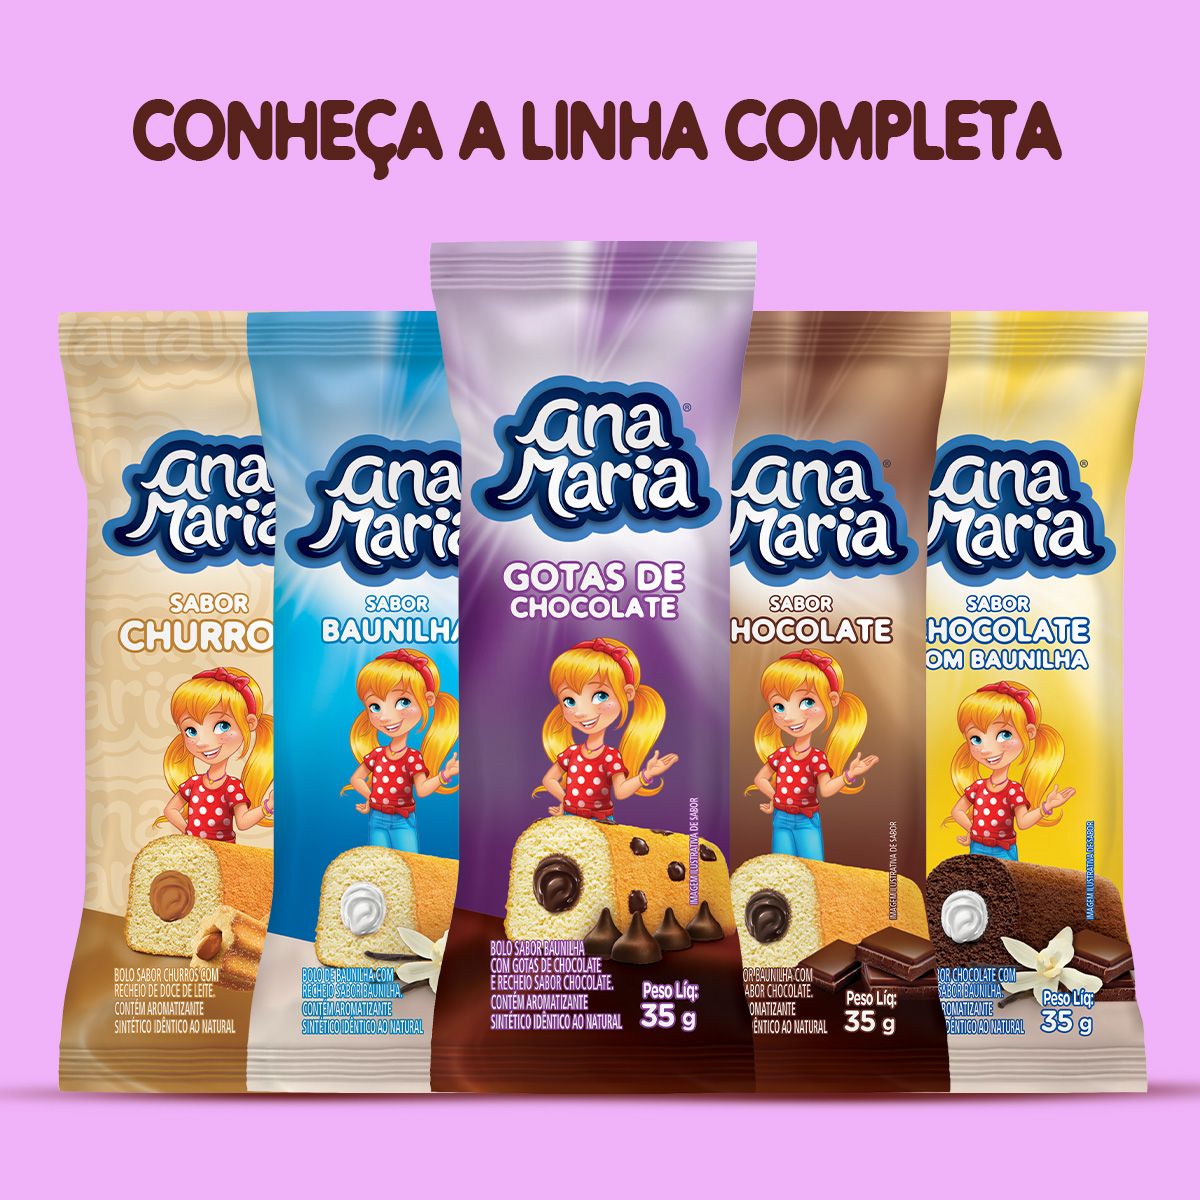 Bolinho Ana Maria com cobertura chocolate 42g - Supermercado Savegnago